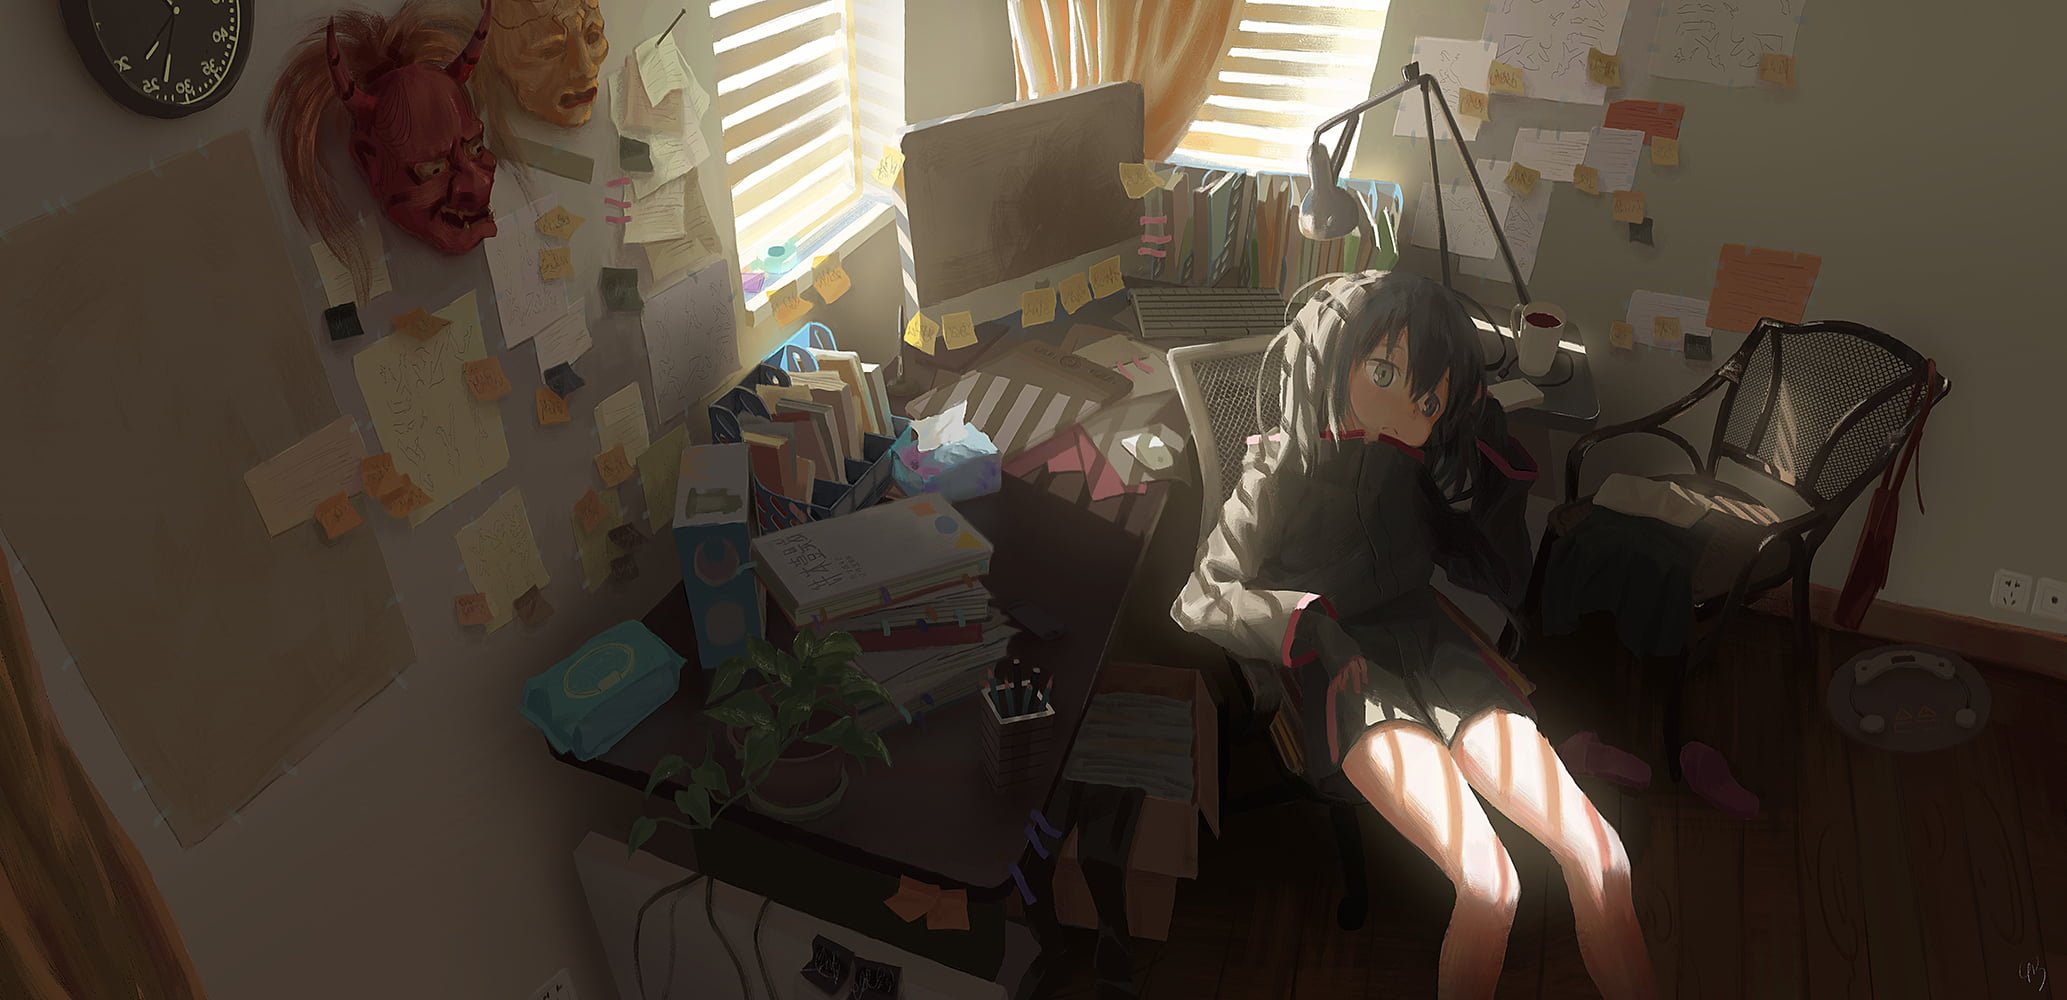 Wallpaper Anime Girls, Anime: Gamers!, Room, Interior, Sitting, Desk